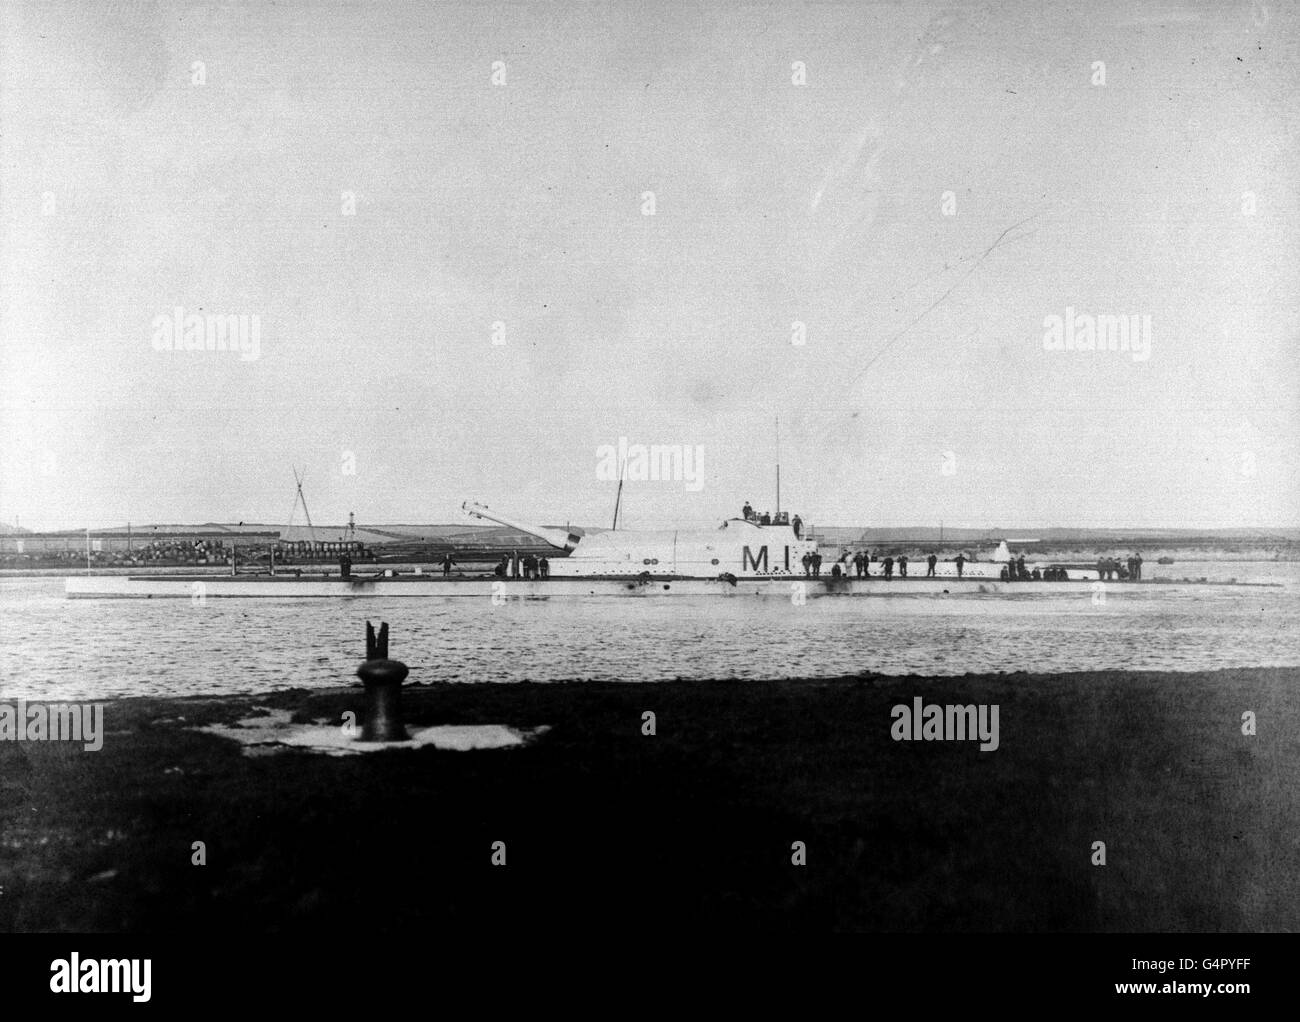 PA Photo 1919: Eine Bibliotheksdatei des Ersten Weltkriegs Royal Navy Submarine M1, vor kurzem (1999) auf dem Meeresboden vor Portsmouth entdeckt. Das U-Boot wird angenommen, dass es versenkt wurde, nachdem es versehentlich von einem Schiff getroffen wurde. Es gab keine Überlebenden. Stockfoto